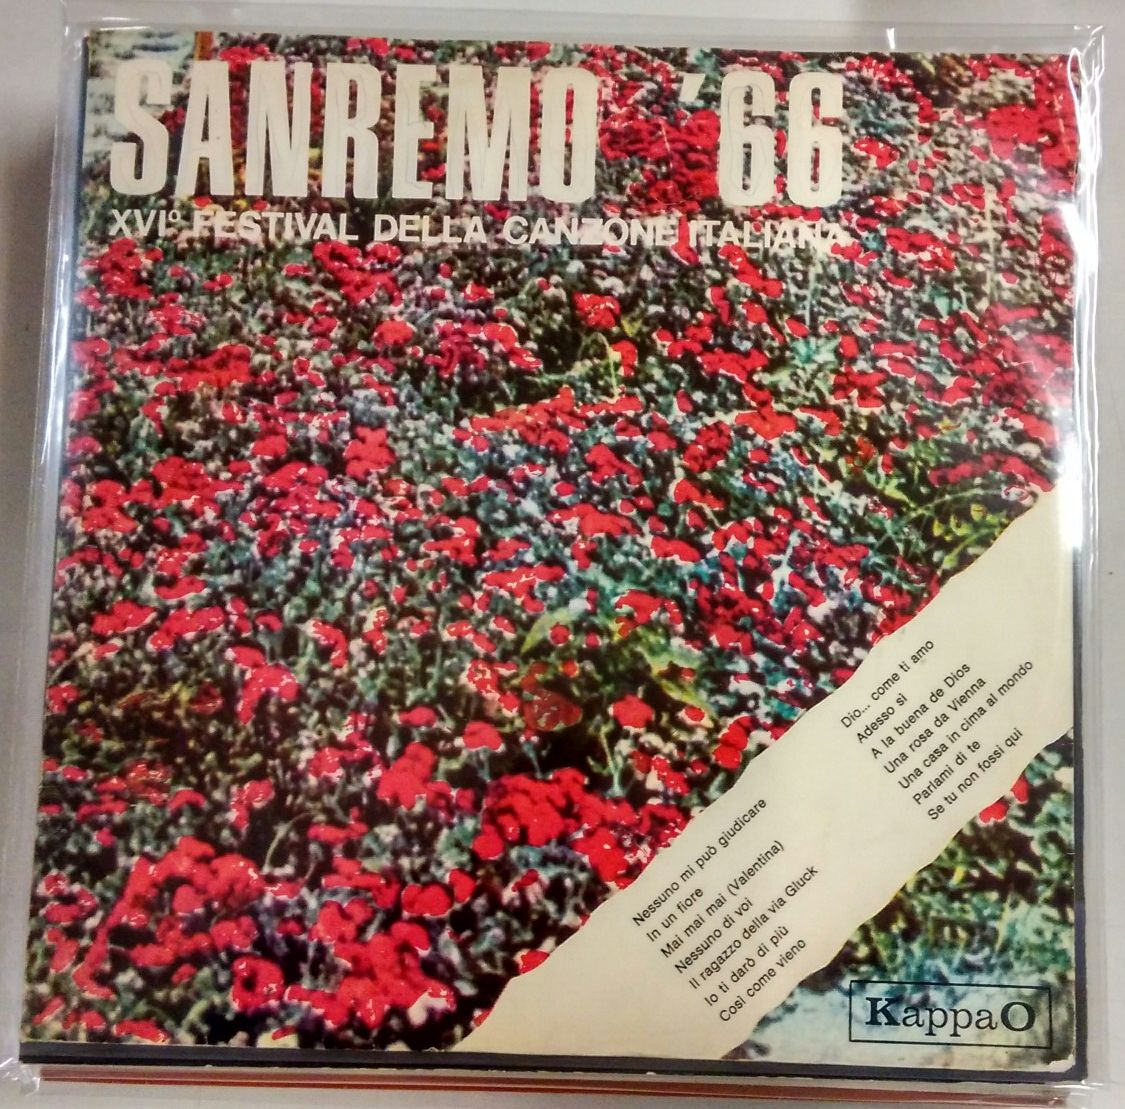 Sanremo '66 XVI festival della canzone italiana